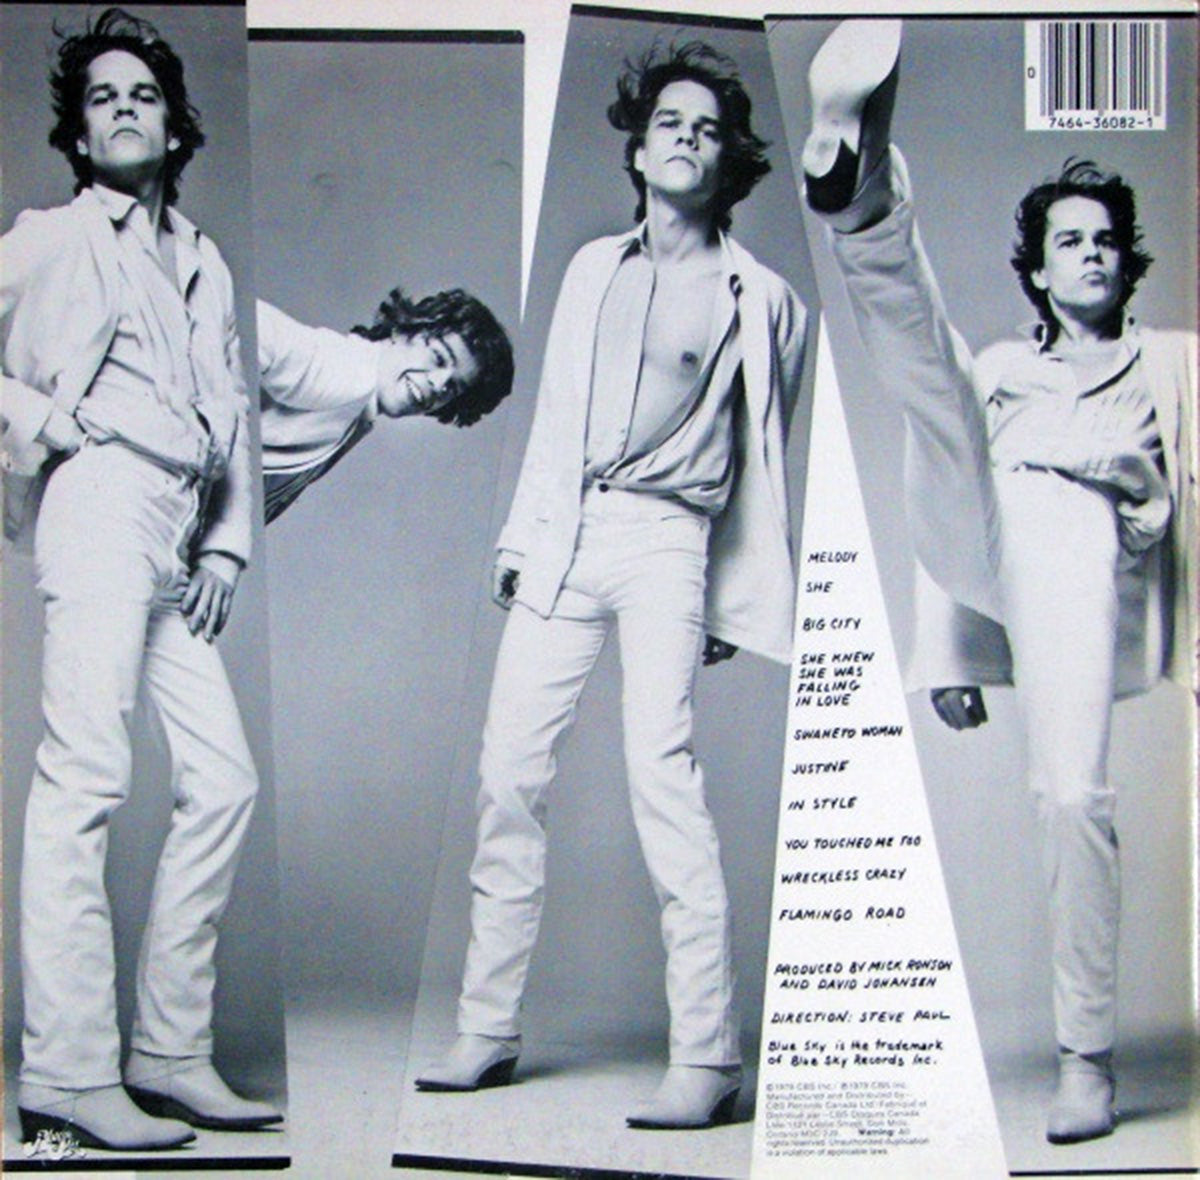 David Johansen – In Style - 1979